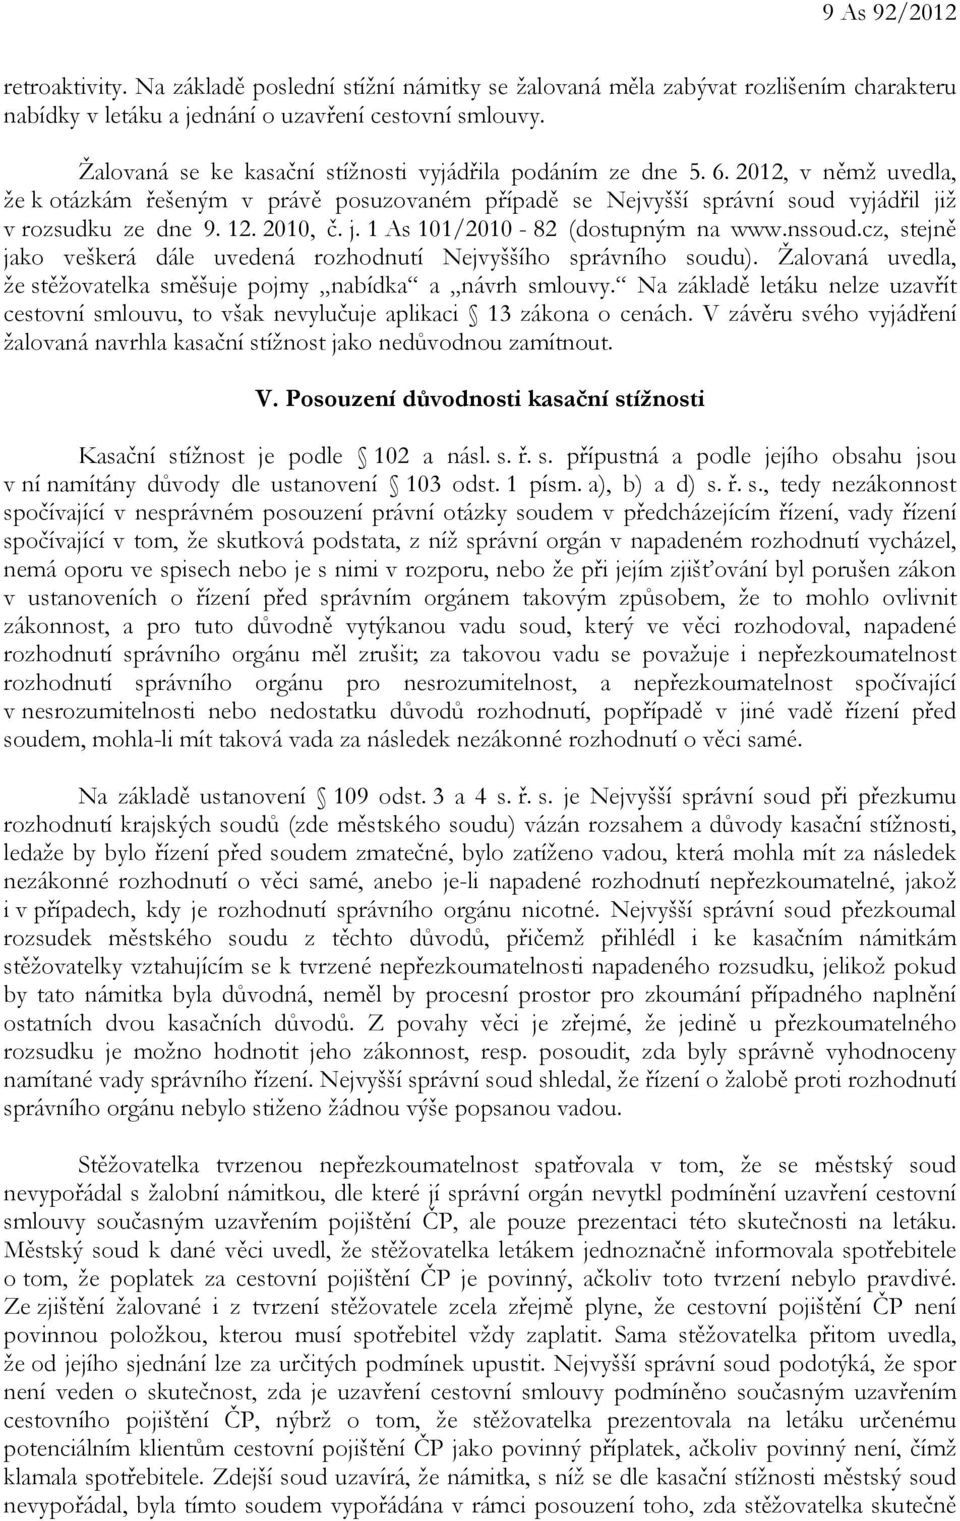 2010, č. j. 1 As 101/2010-82 (dostupným na www.nssoud.cz, stejně jako veškerá dále uvedená rozhodnutí Nejvyššího správního soudu).